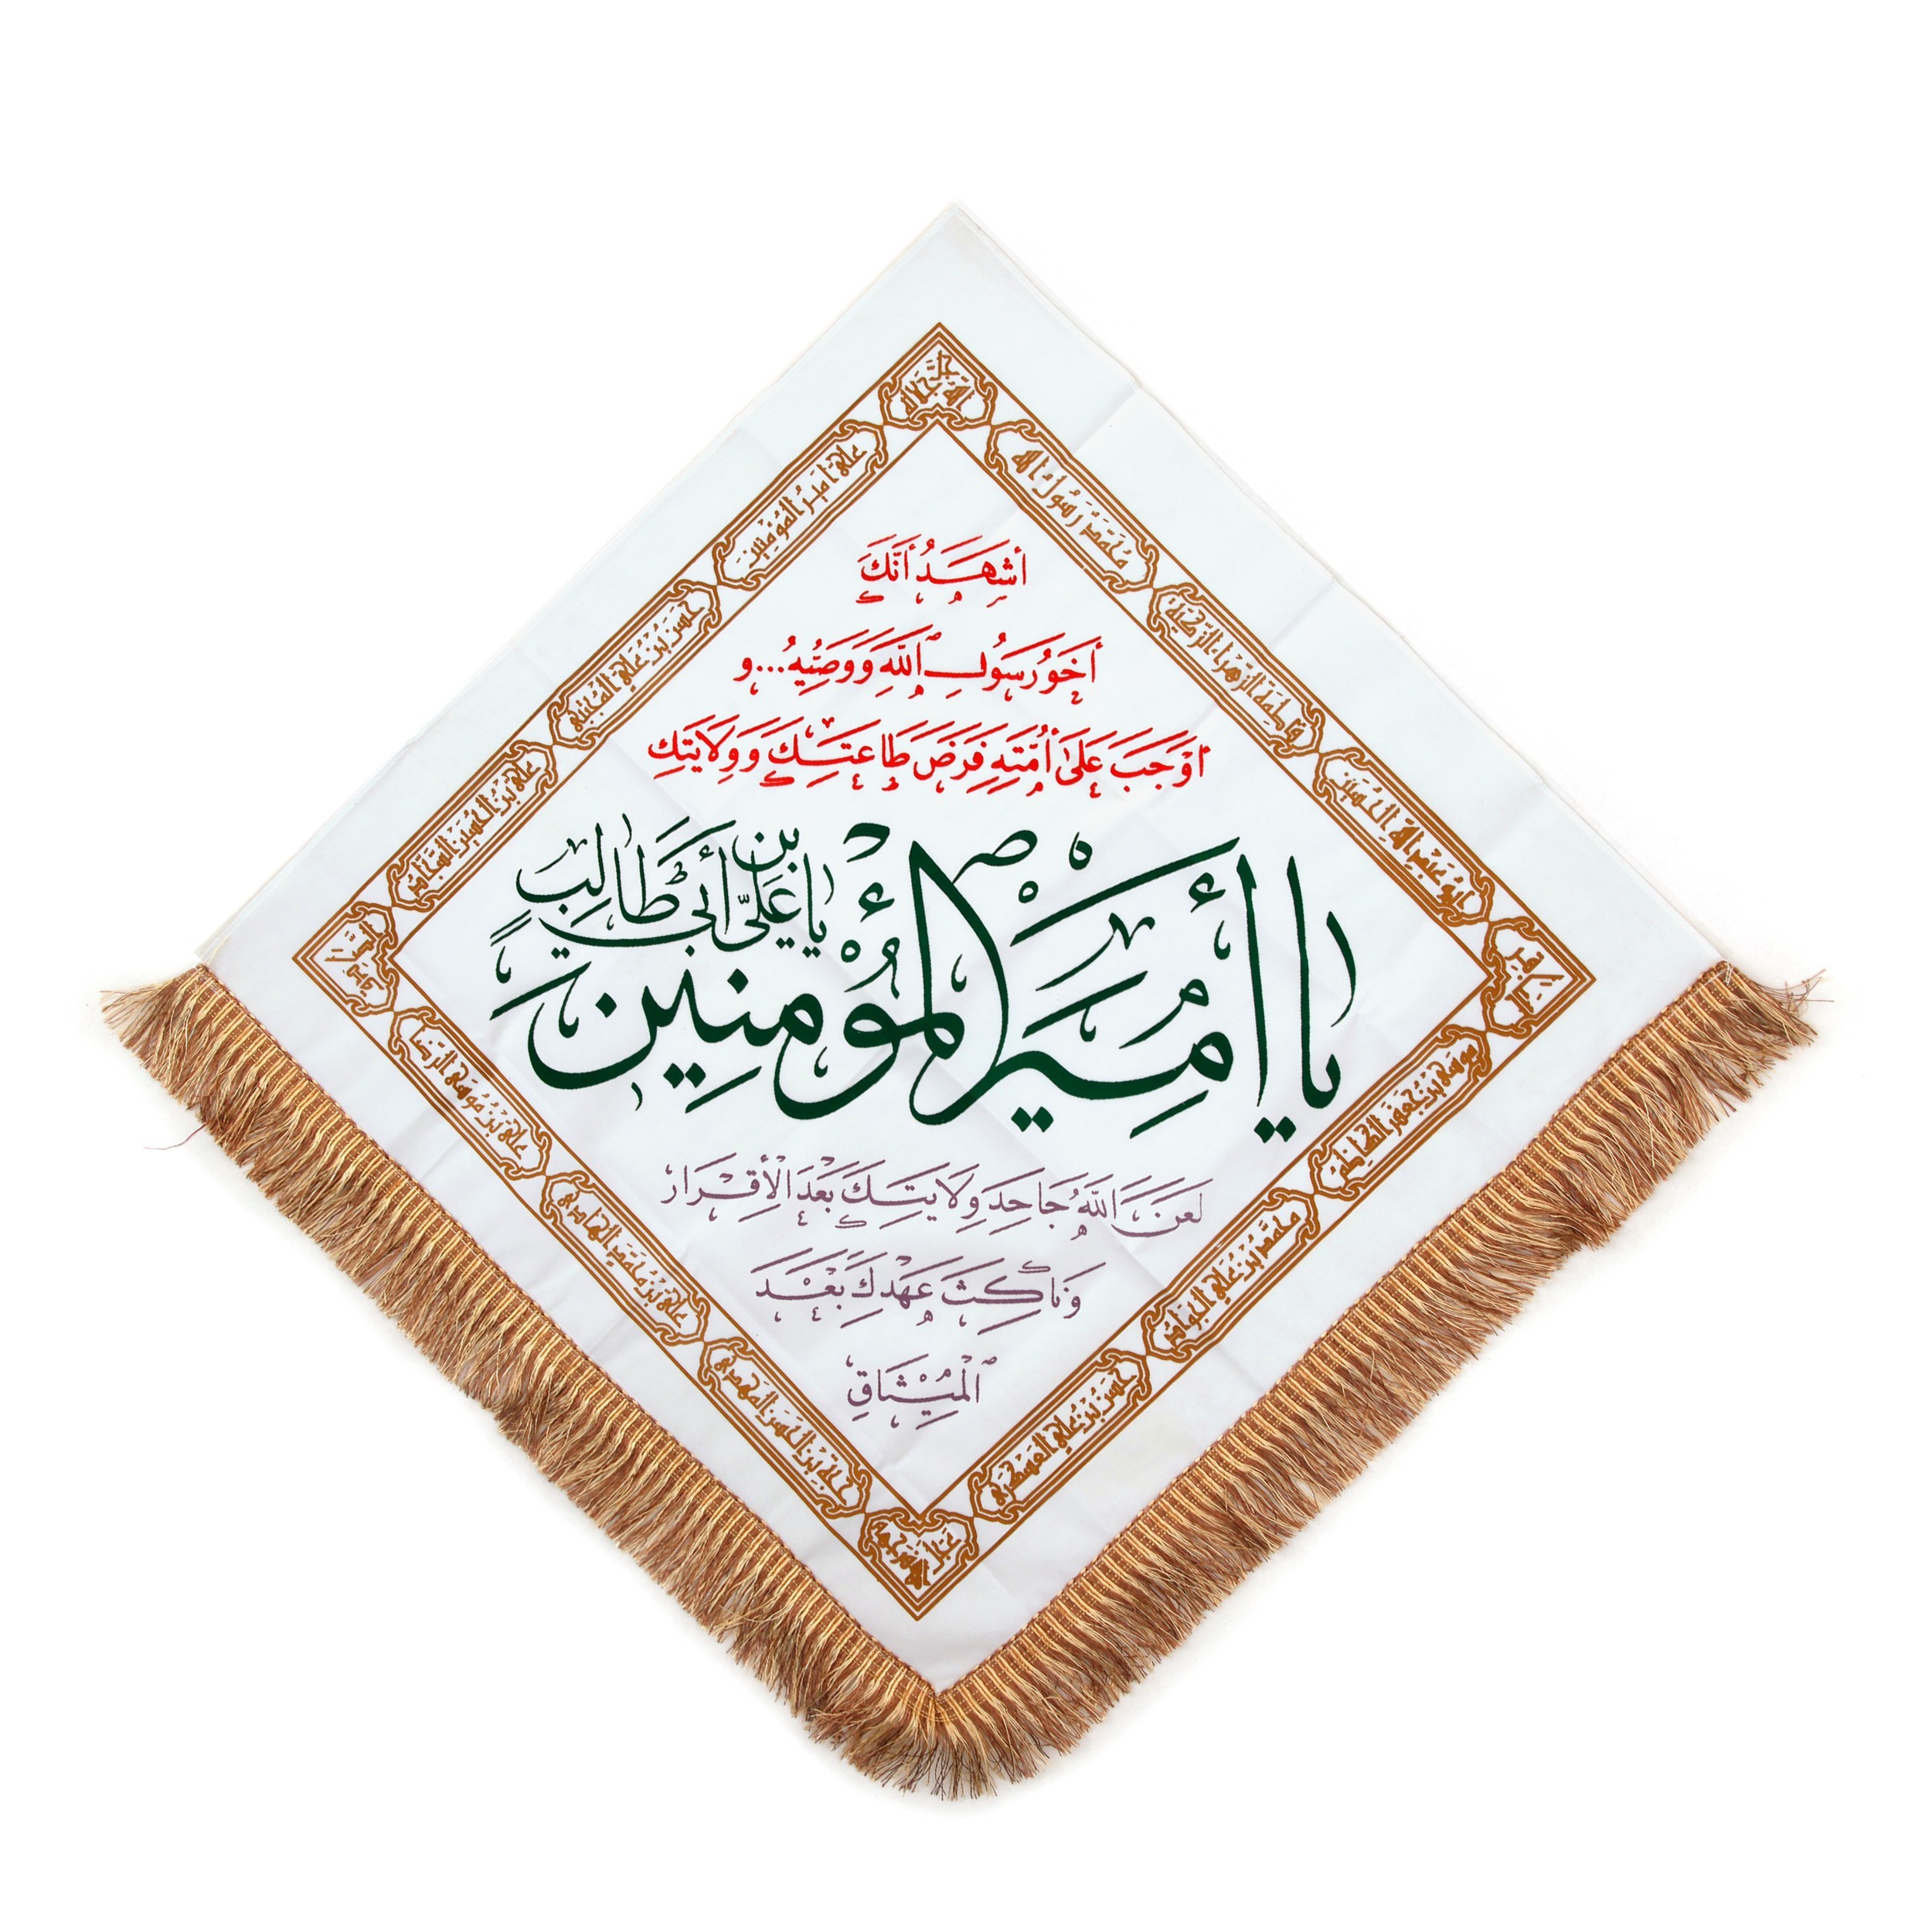 پرچم مدل لوزی طرح مذهبی یا امیرالمومنین علی علیه السلام کد 30001869